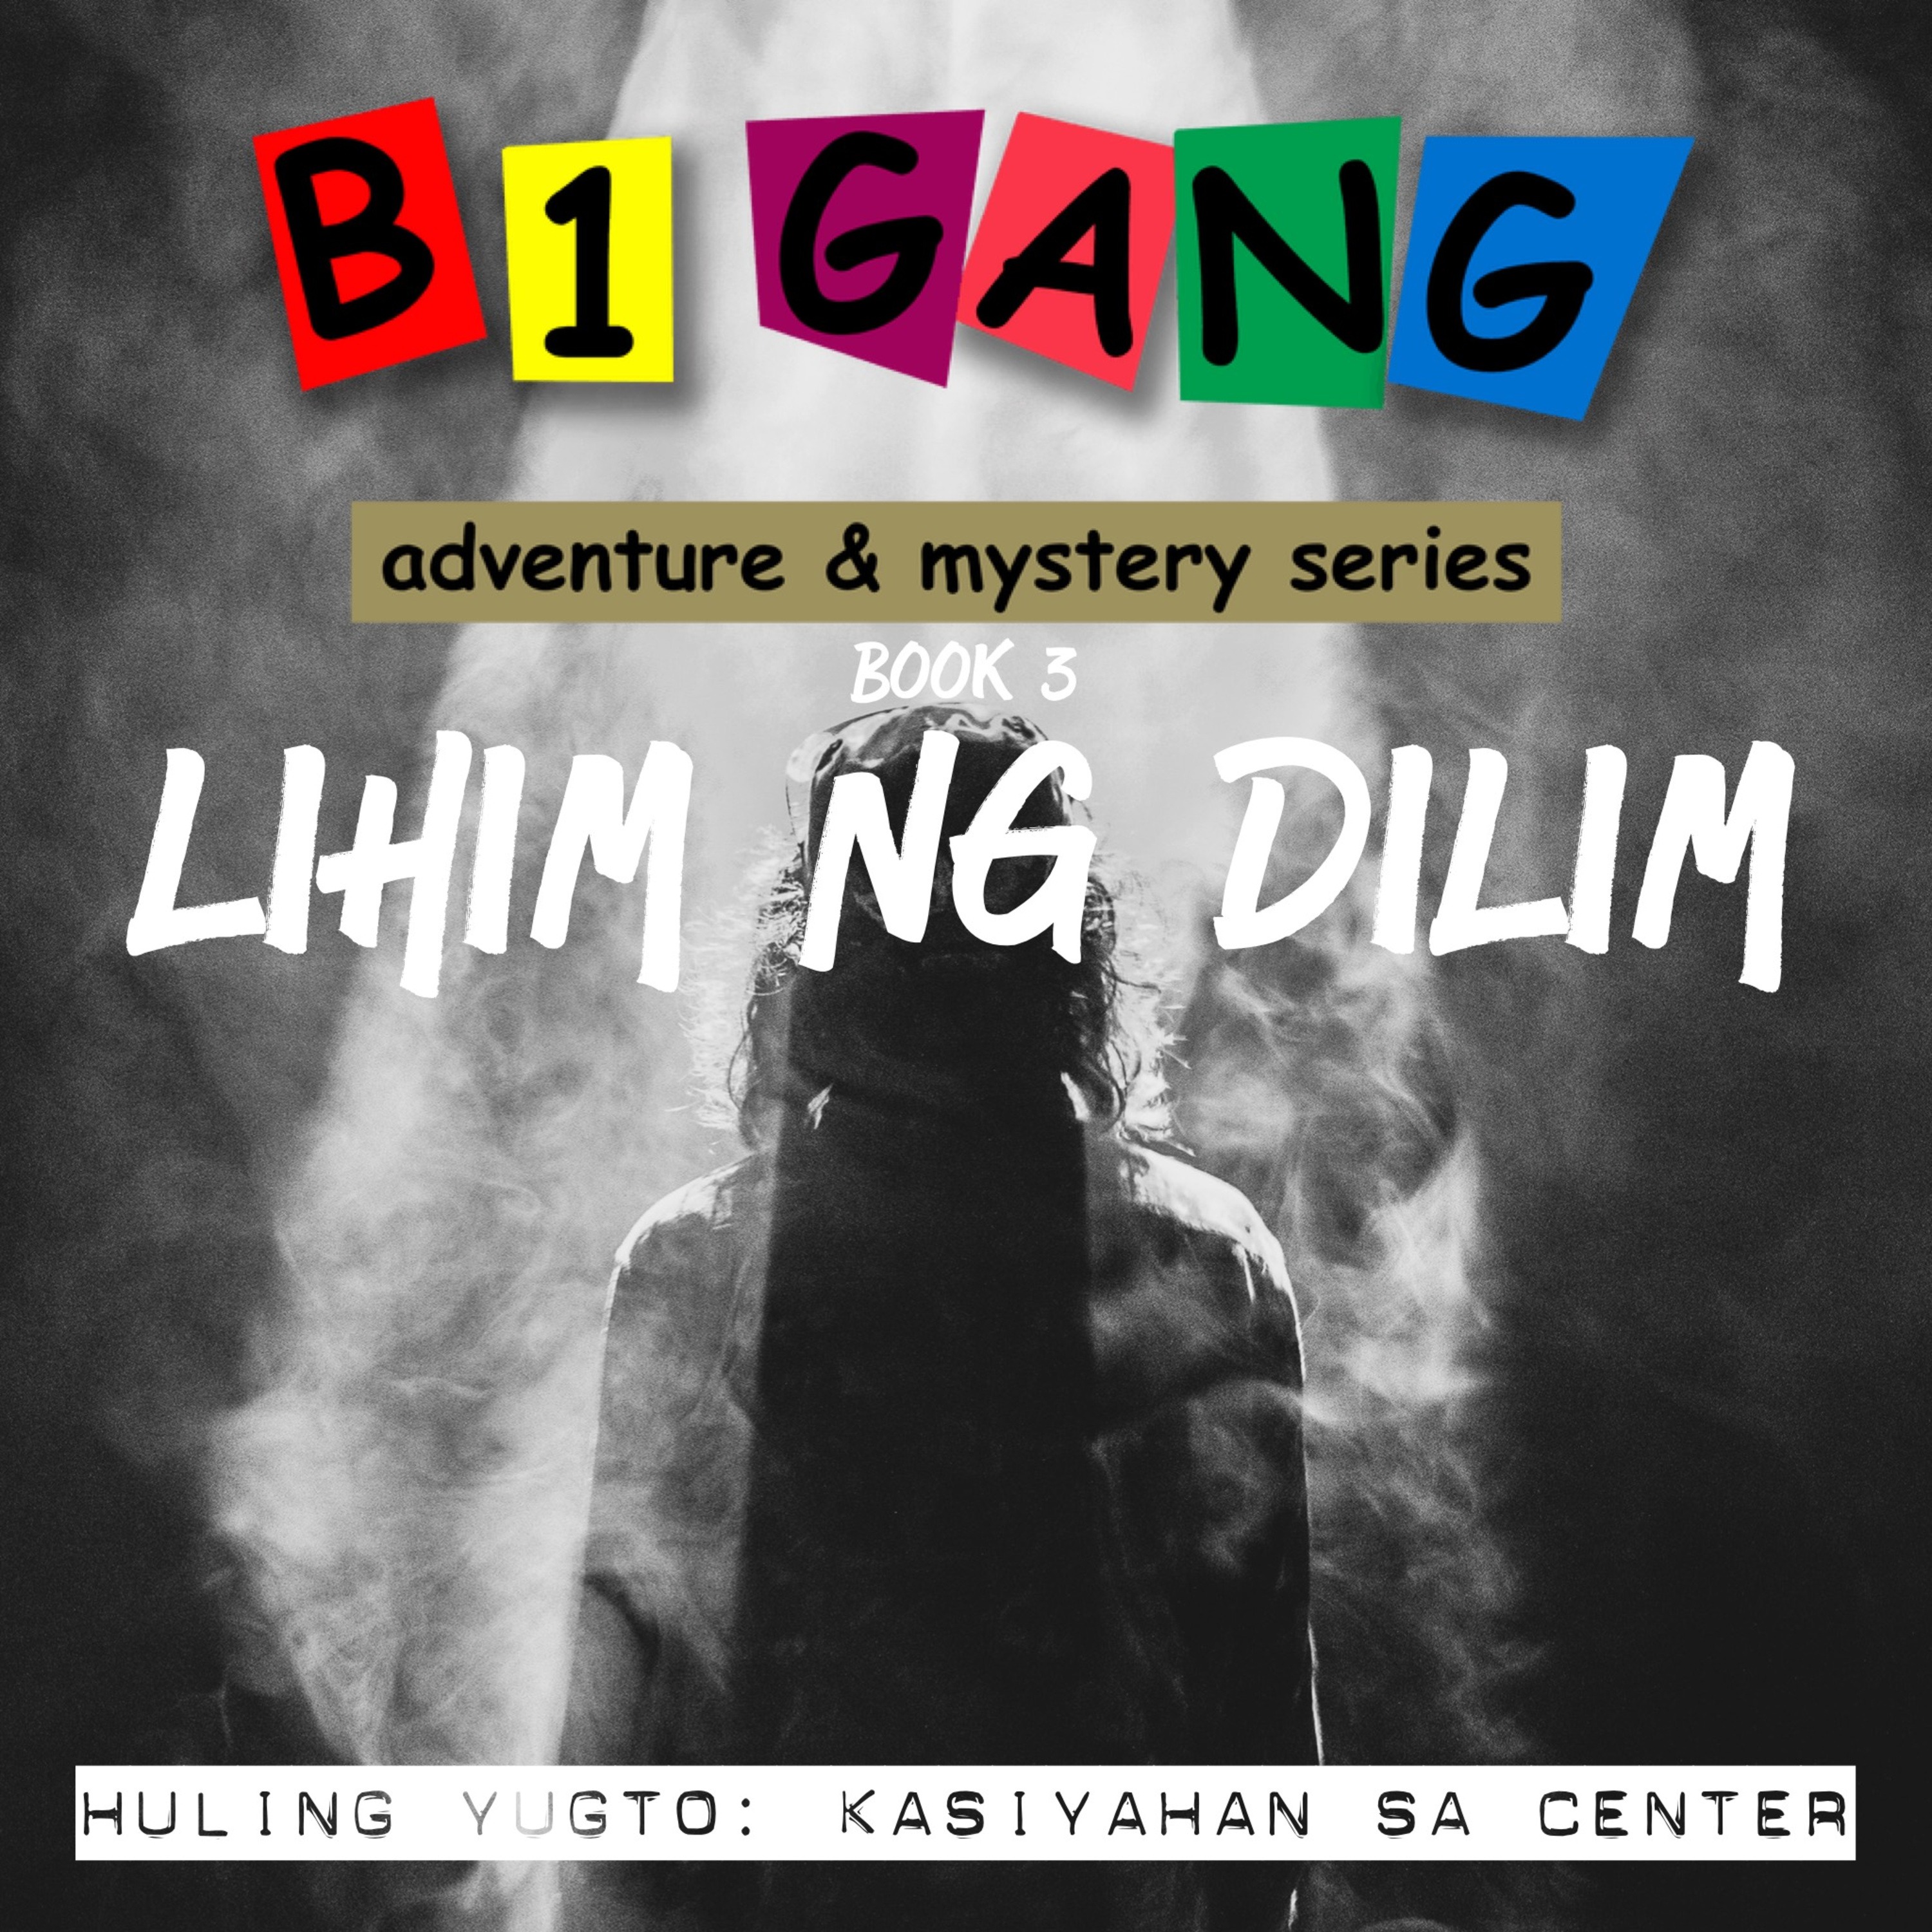 Episode 68 3x13 Huling Yugto Kasiyahan Sa Center Tagalog Pinoy Horror Story From Stories 2886